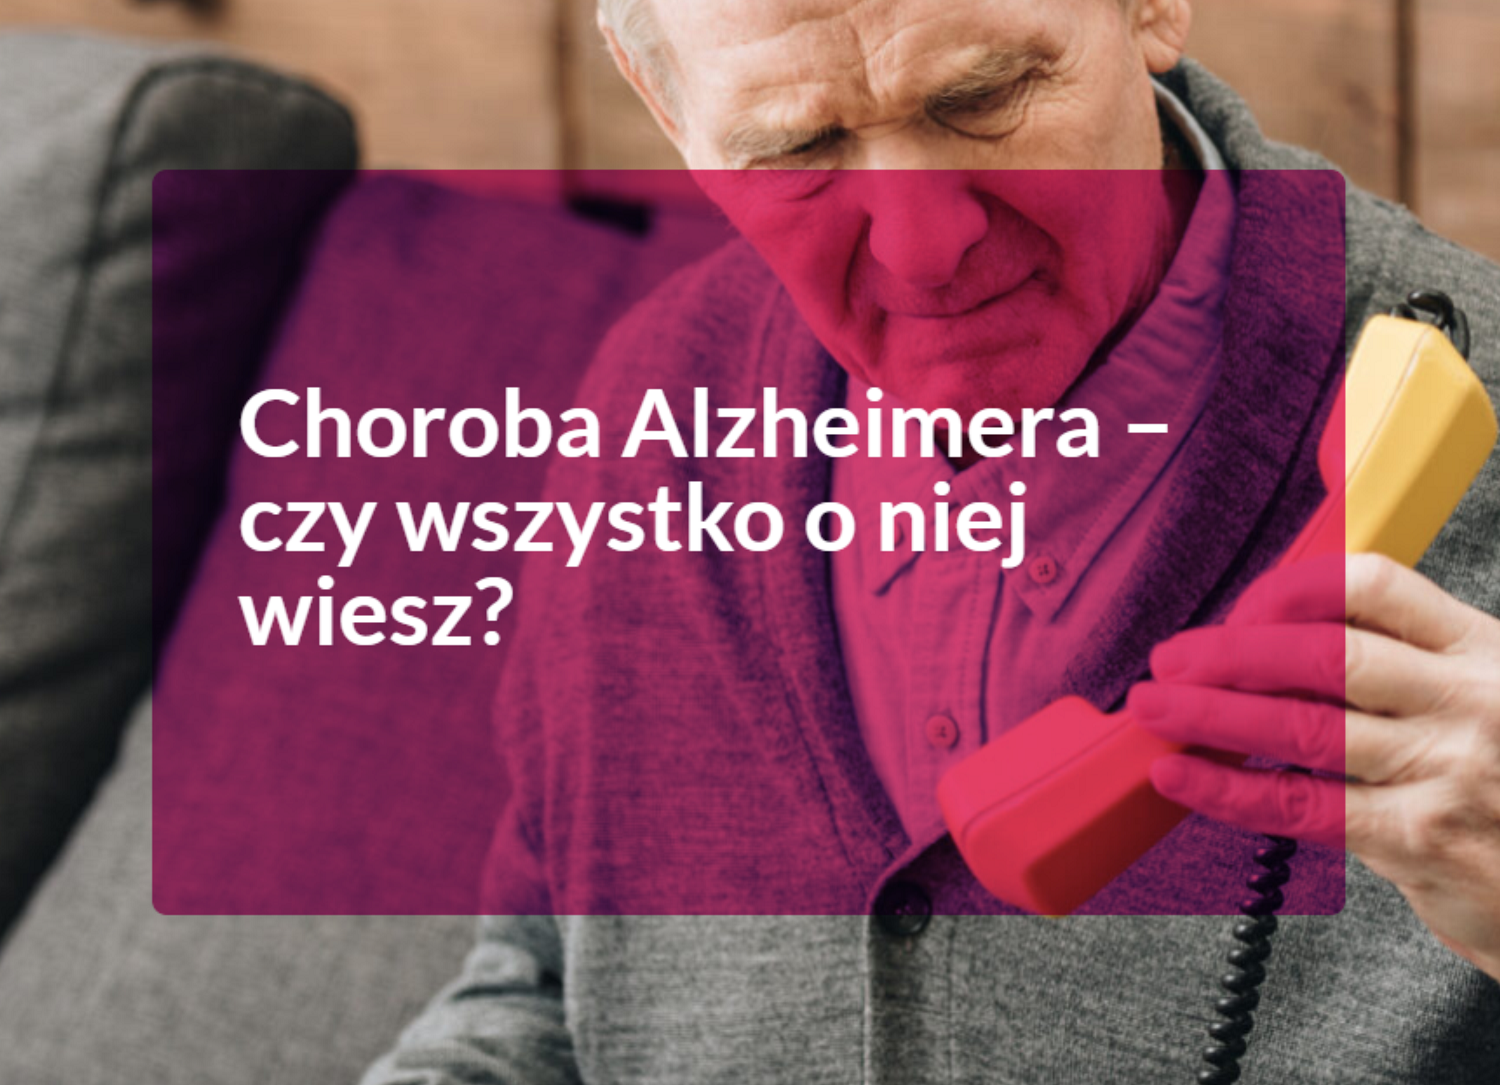 Życie z Alzheimerem - Środa z Profilaktyką